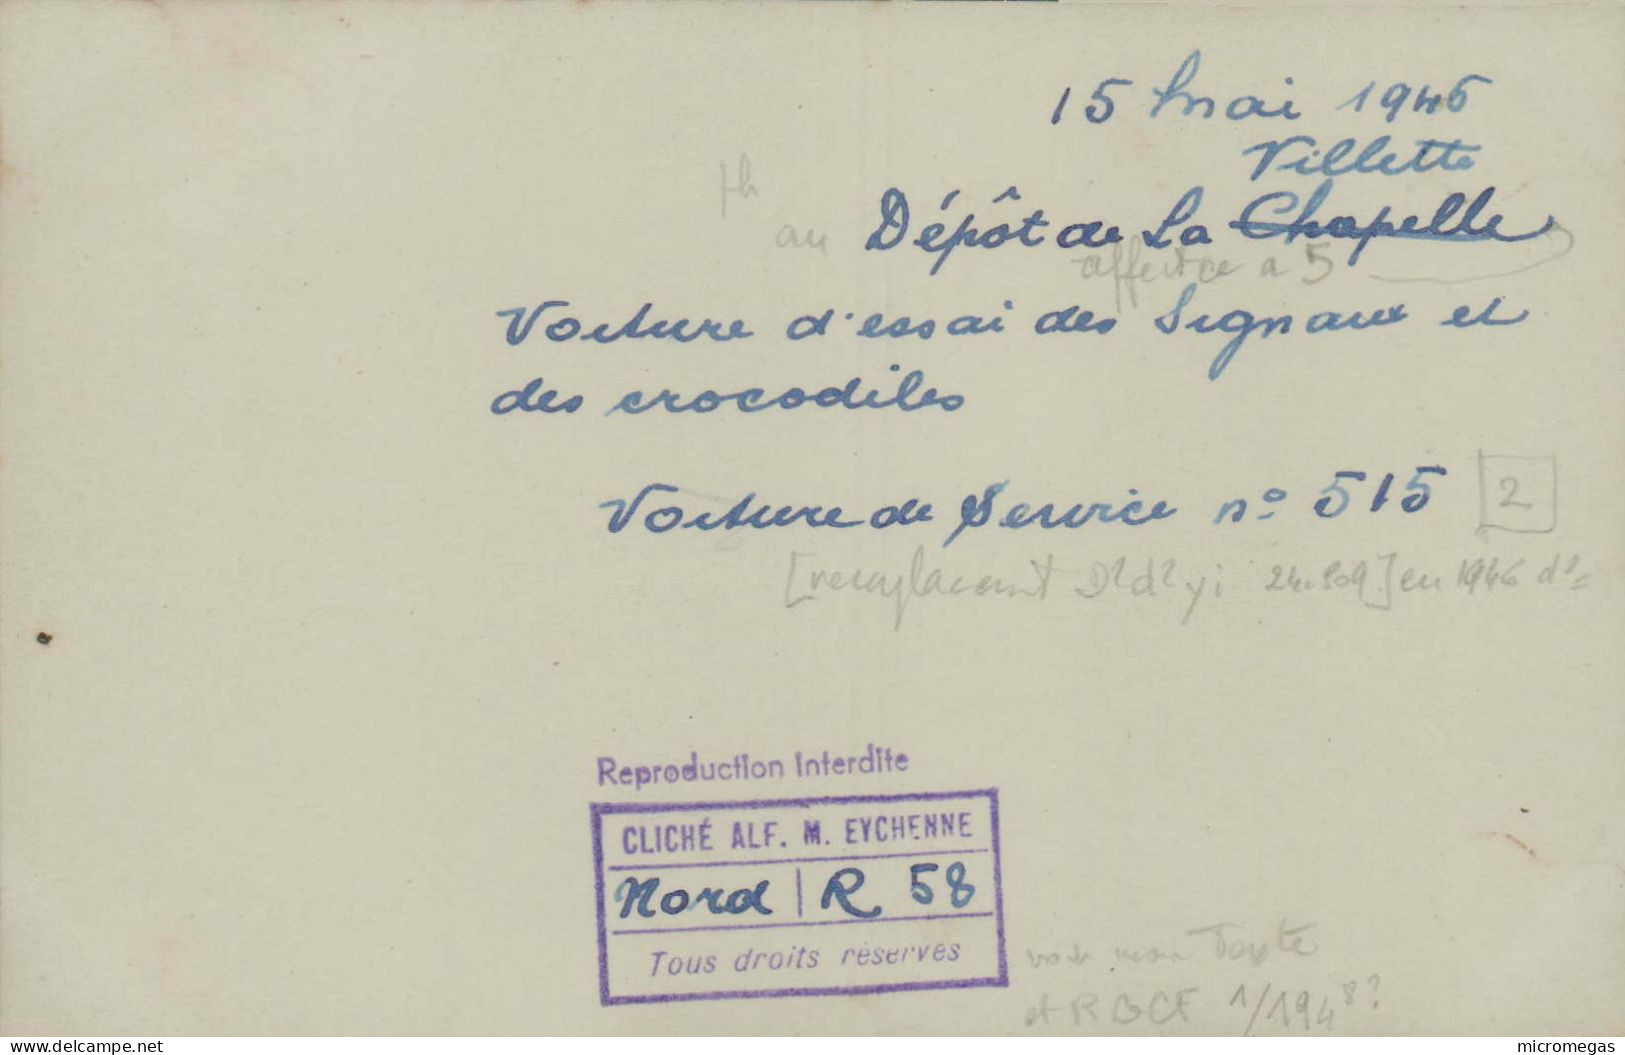 15 Mai 1946, Villette - Dépôt De La Chapelle - Voiture D'essai Des Signaux Et Des Crocodiles  - Cliché Alf. M. Eychenne - Treinen